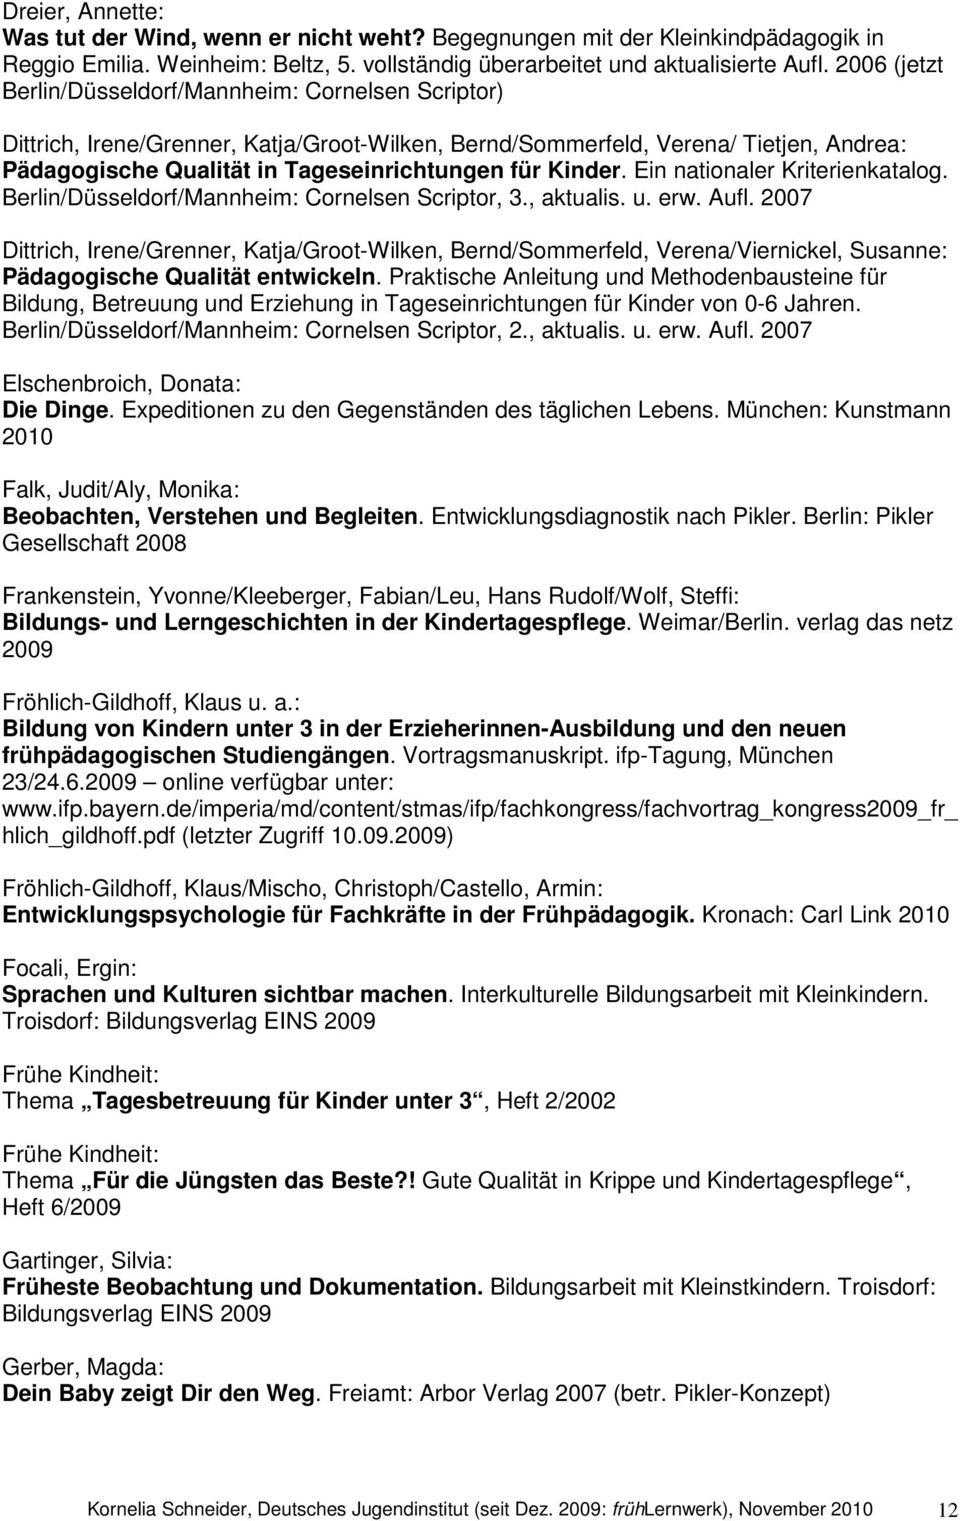 Kinder. Ein nationaler Kriterienkatalog. Berlin/Düsseldorf/Mannheim: Cornelsen Scriptor, 3., aktualis. u. erw. Aufl.